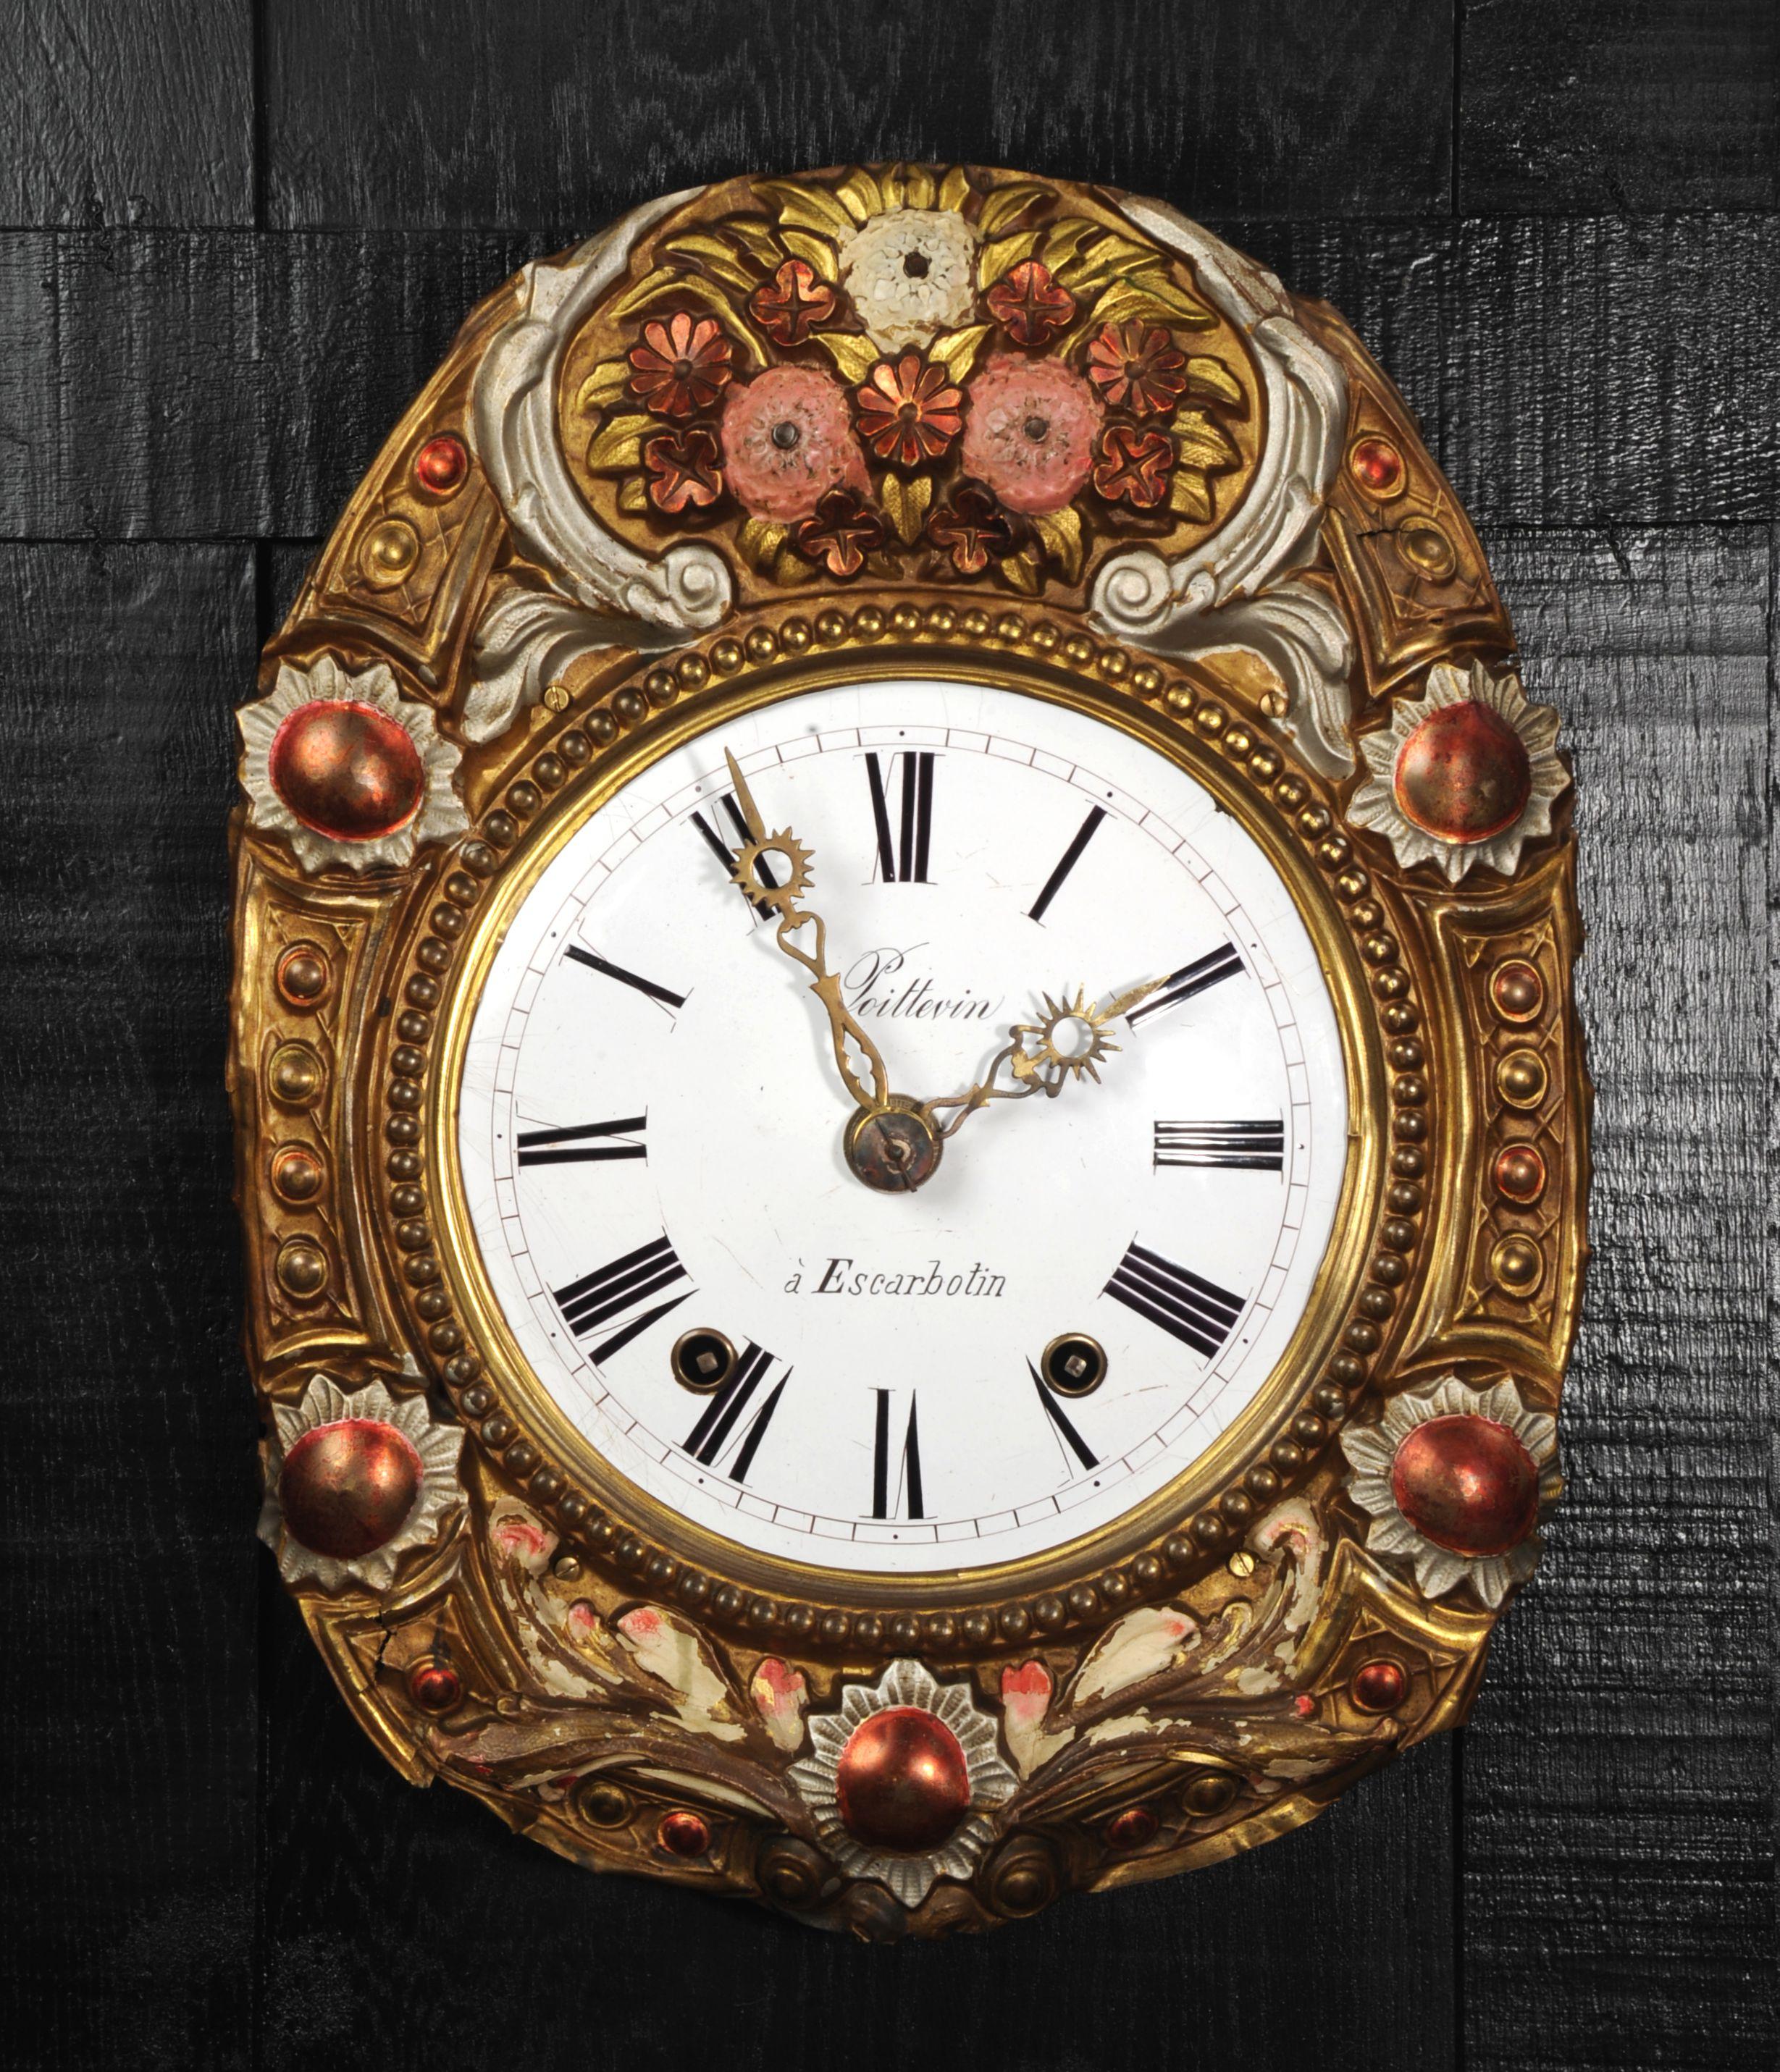 Eine charmante antike Französisch comptoise Uhr Zifferblatt, schön naiv repoussé Arbeit umgeben mit gemalten Dekoration, Porzellan-Emaille-Zifferblatt mit Messingzeigern. Ursprünglich mit einem großen gewichtsgetriebenen Uhrwerk ausgestattet, fehlte